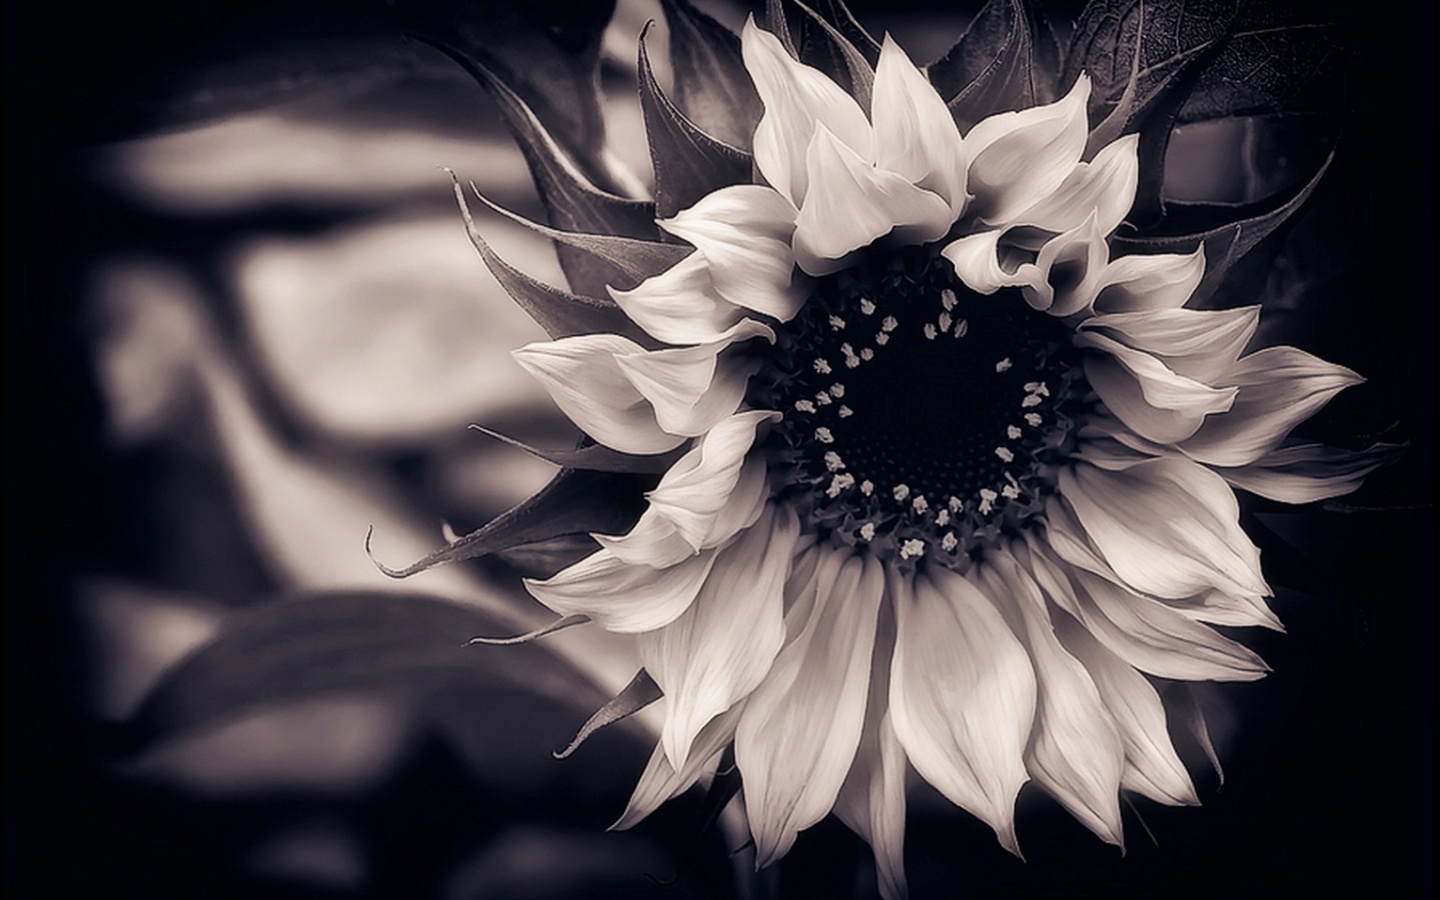 흑백 꽃 무늬 벽지,흑백 사진,하얀,검정색과 흰색,꽃,검정